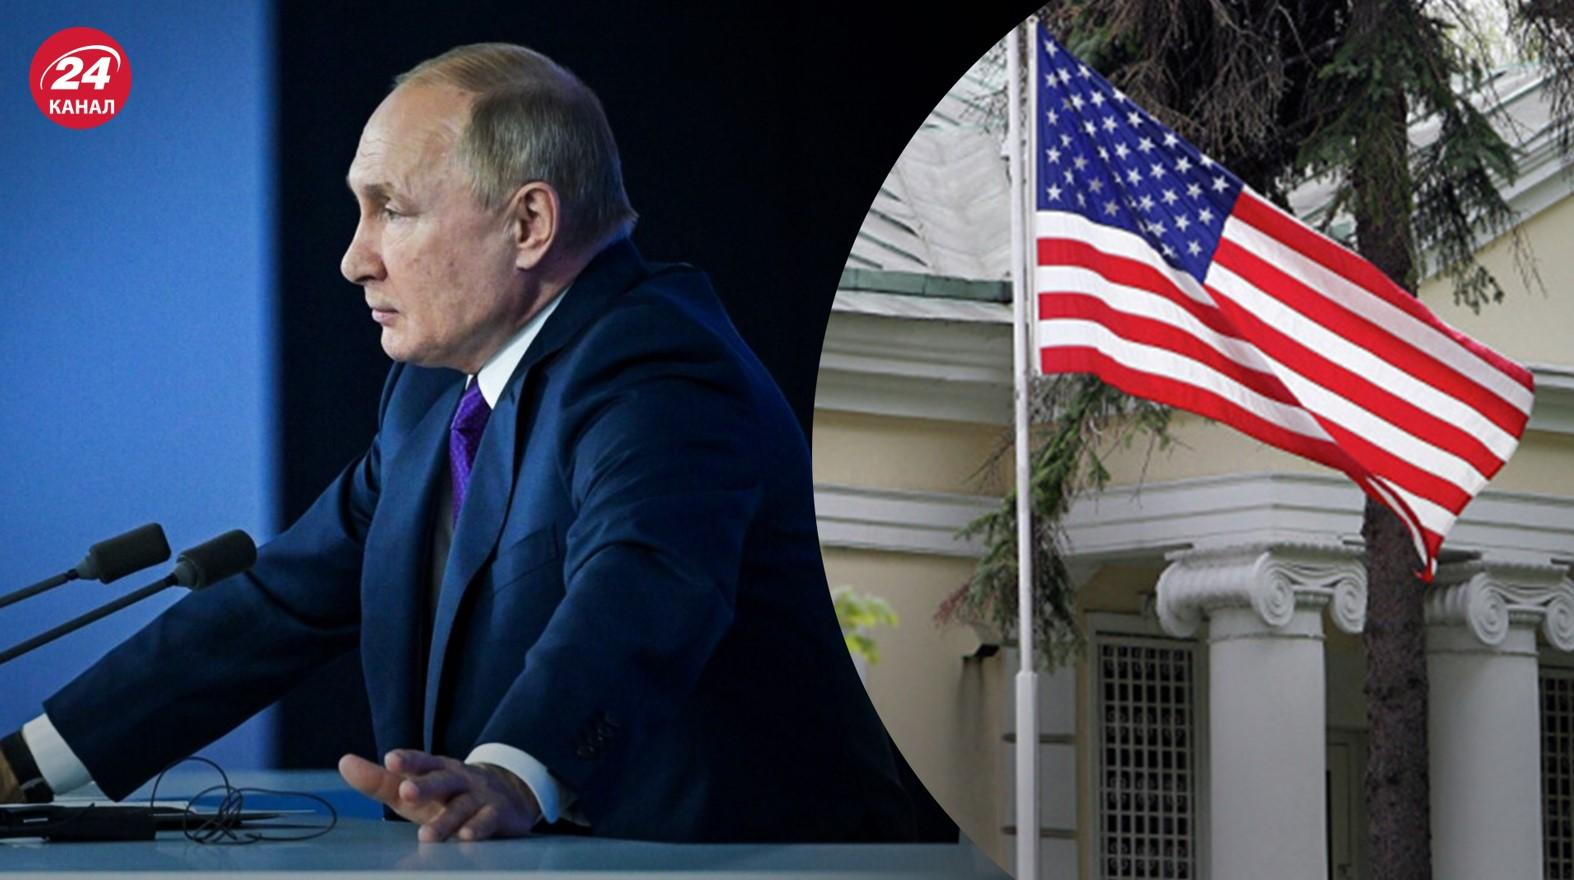 Ще більше прибічників Путіна: сенатори США закликали розширити санкційний список